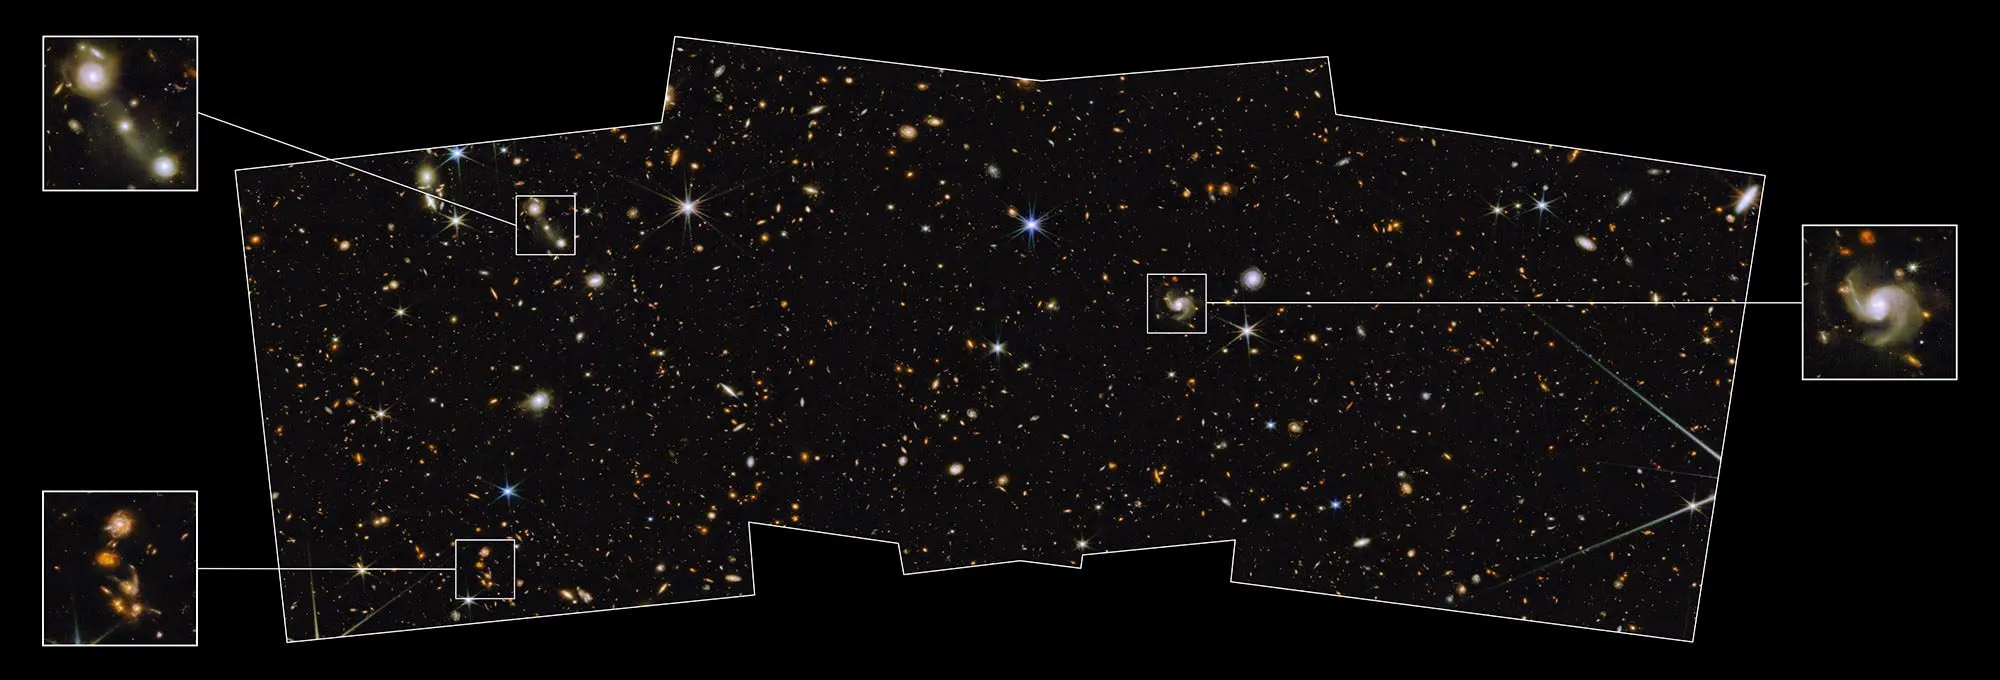 韦伯在北黄极区看到大量的遥远星系